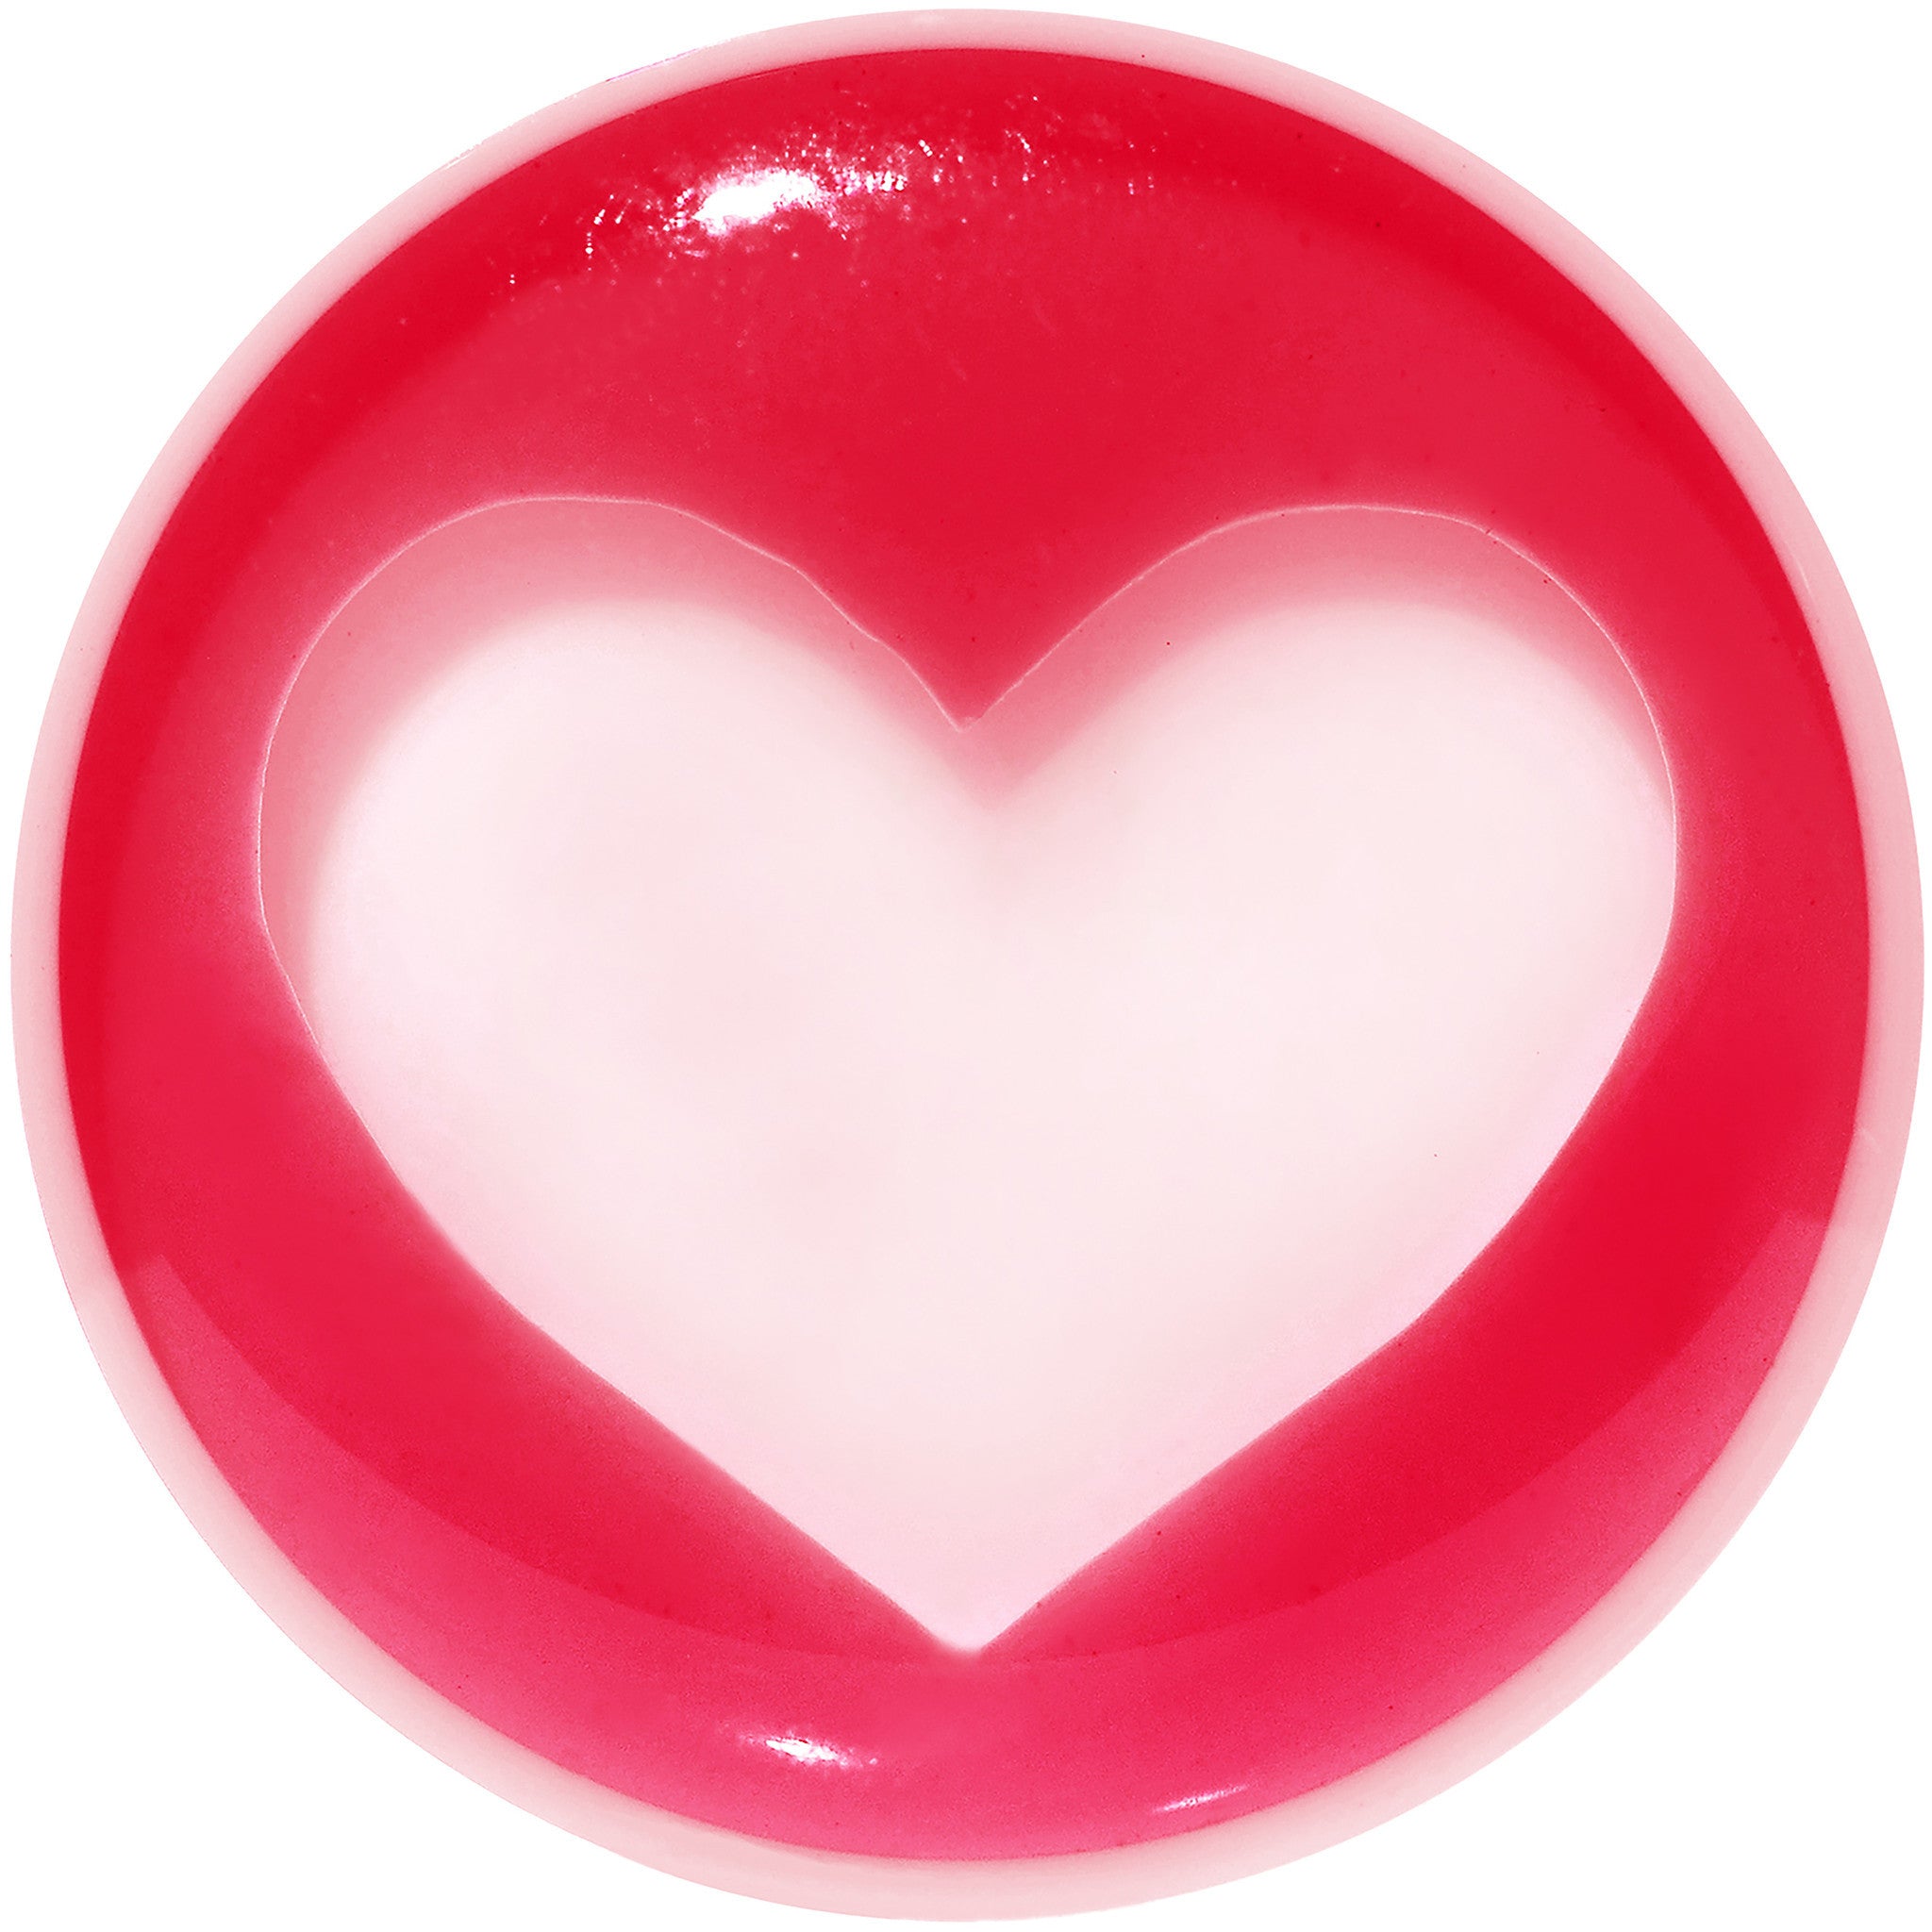 20mm White Red Acrylic Adoring Heart Saddle Plug